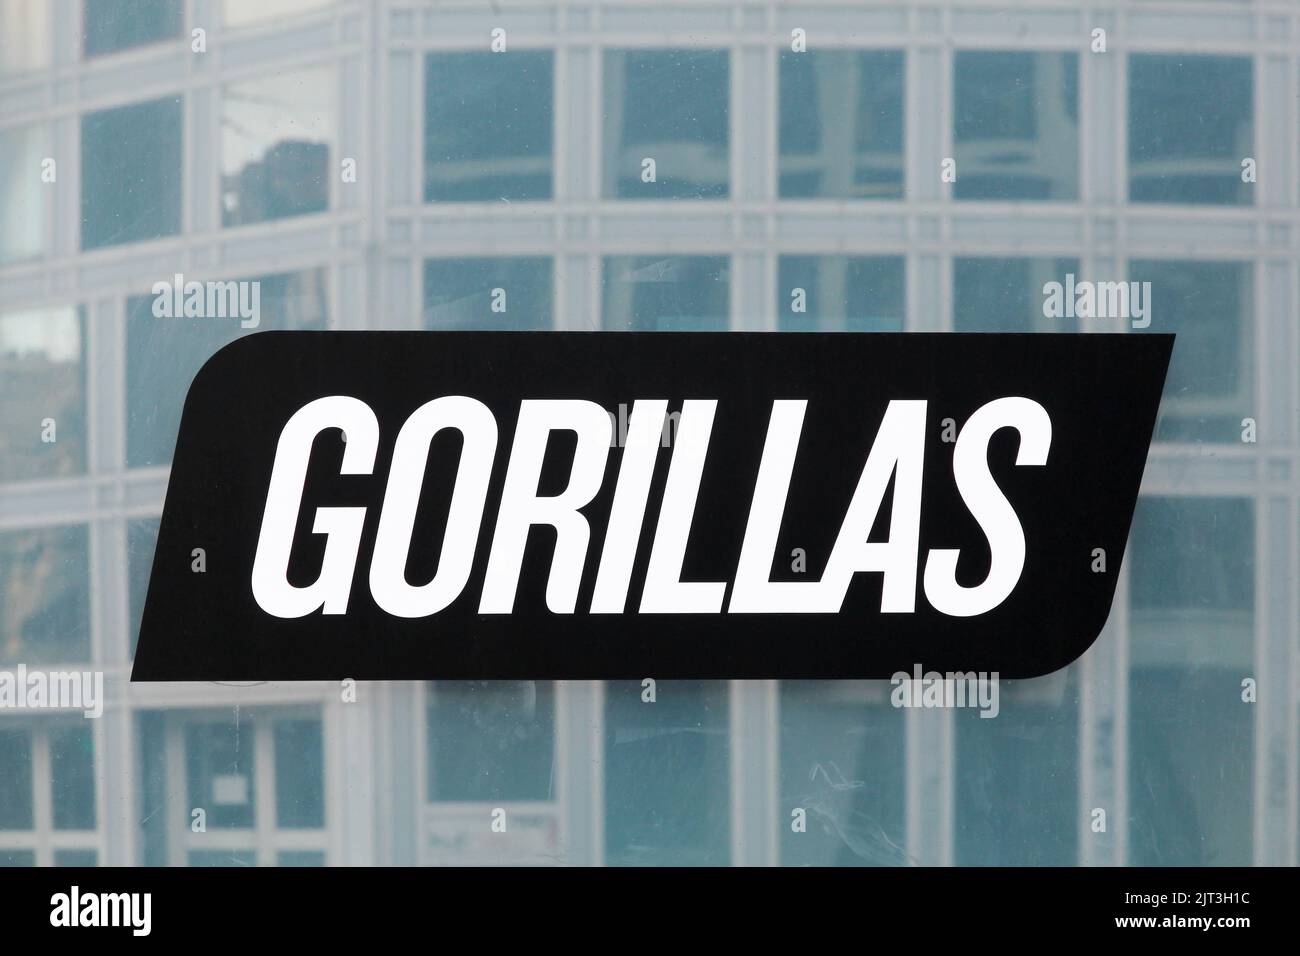 Lyon, Francia - 9 de diciembre de 2021: Logotipo de gorilas en una ventana. Gorilas es una empresa alemana especializada en la entrega de comestibles a los hogares en cuestión de minutos Foto de stock